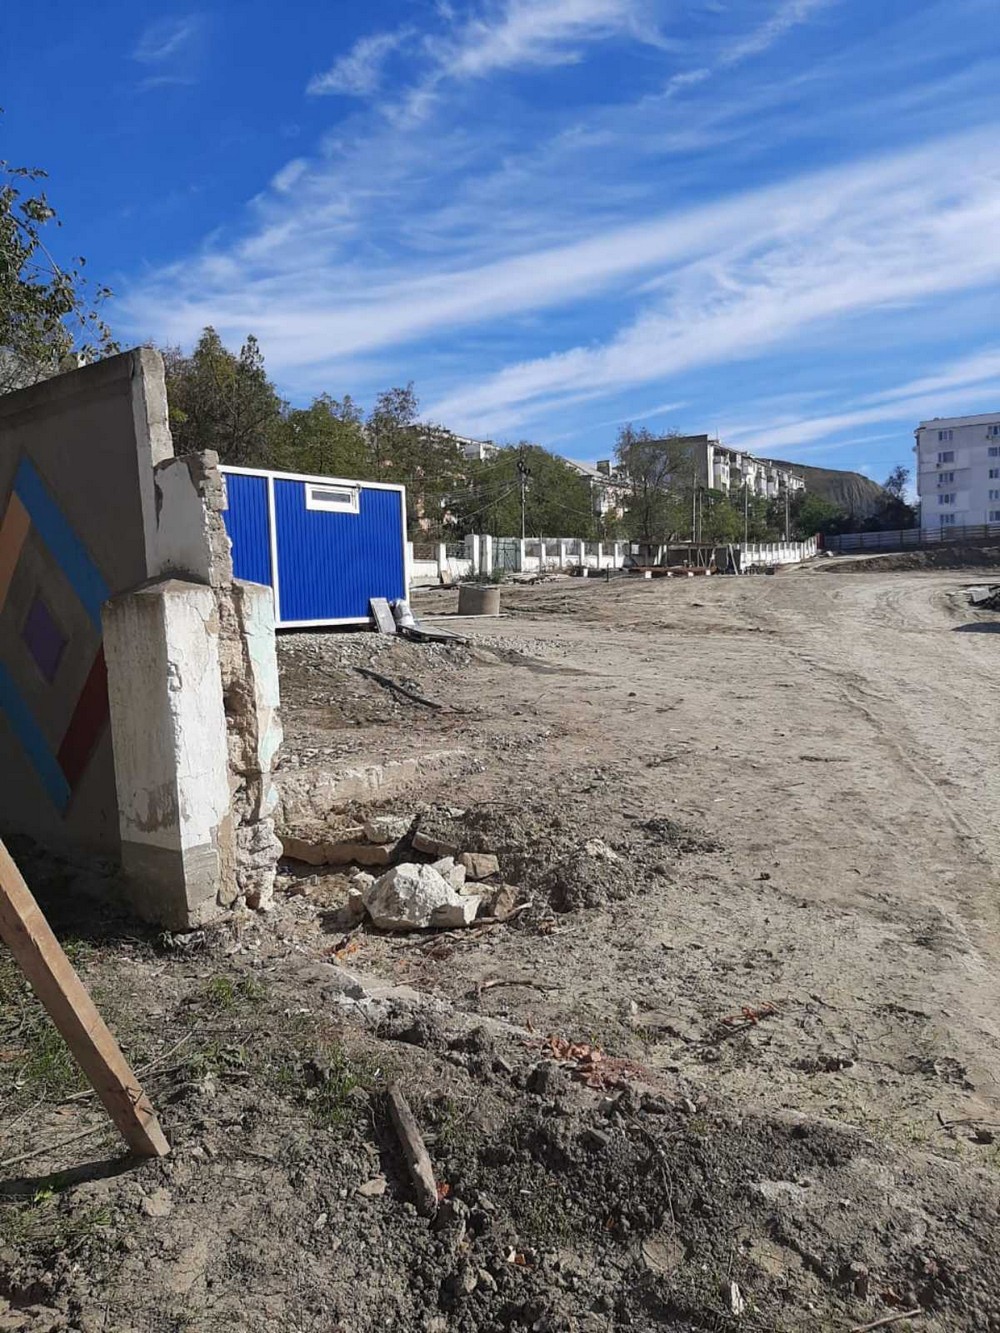 Реконструкция детского сада в Орджоникидзе  идёт полным ходом